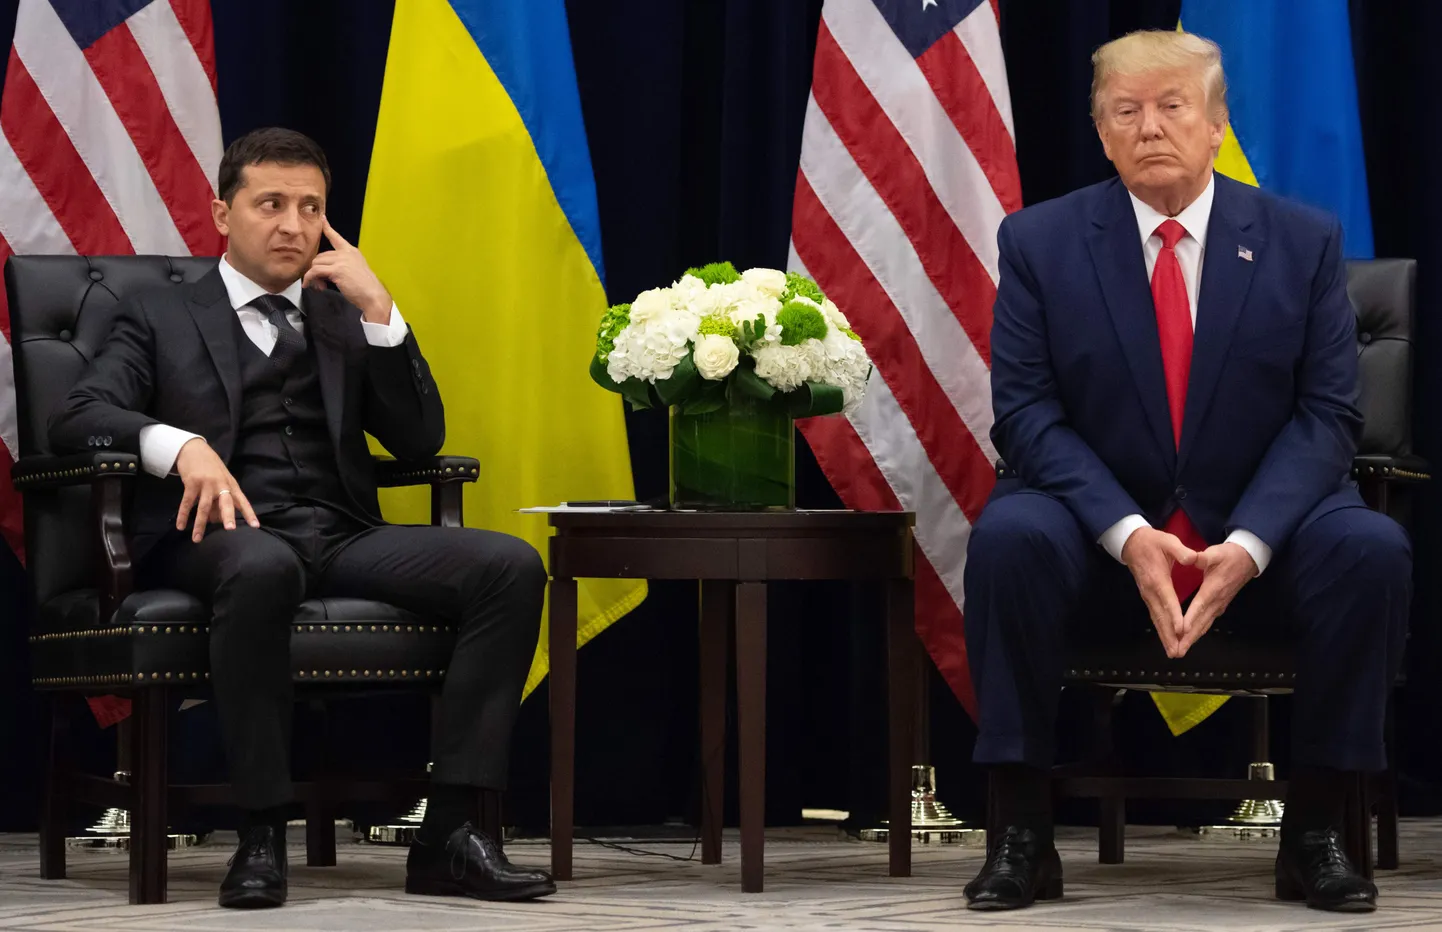 Владимир Зеленский смотрит на Дональда Трампа широко открытыми глазами, США, сентябрь 2019 года.